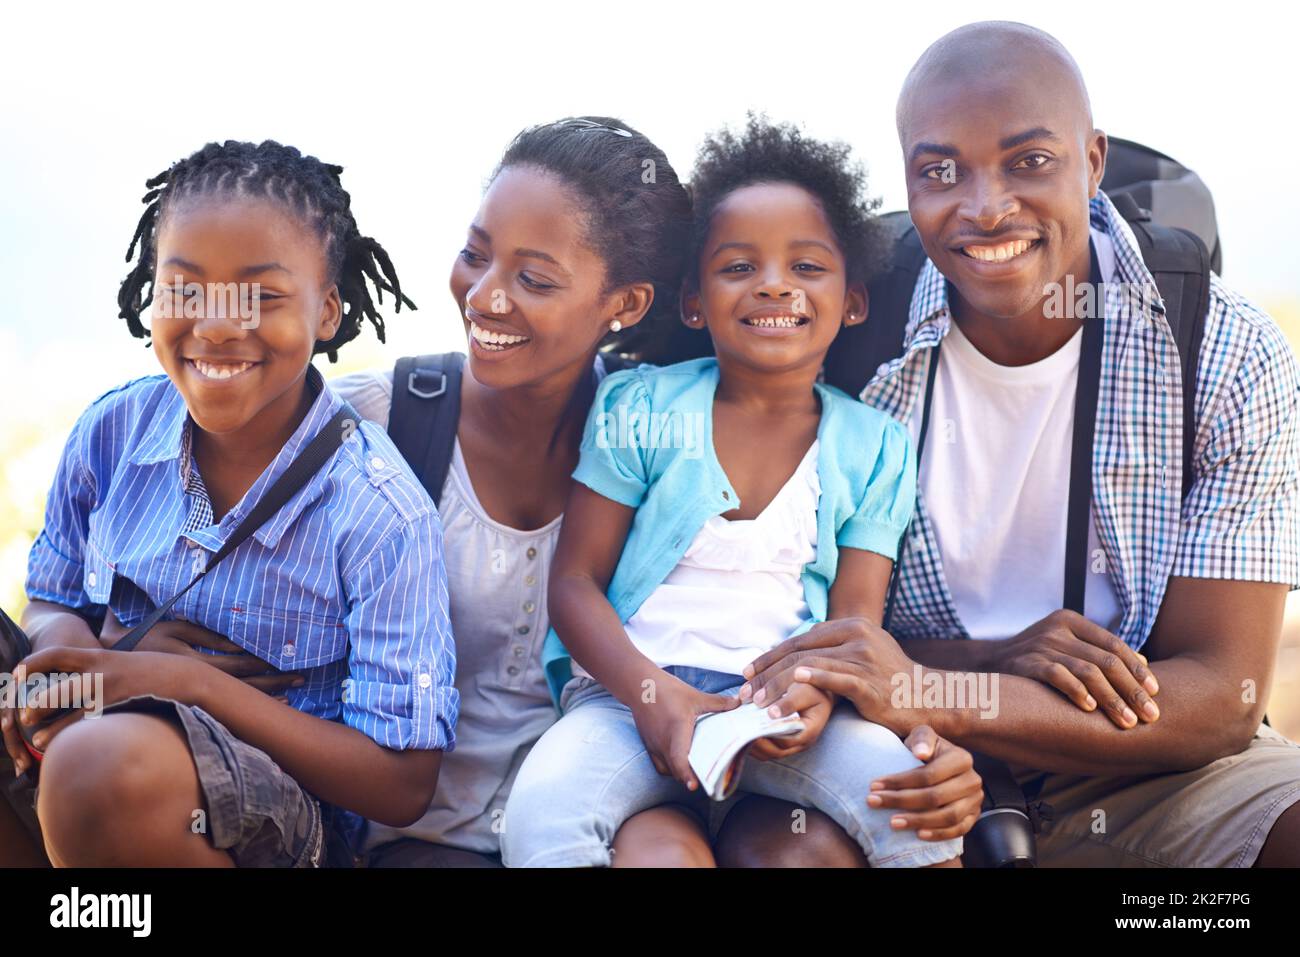 Ils aiment l'air frais. Portrait d'une famille heureuse prenant une pause pendant une randonnée ensemble. Banque D'Images